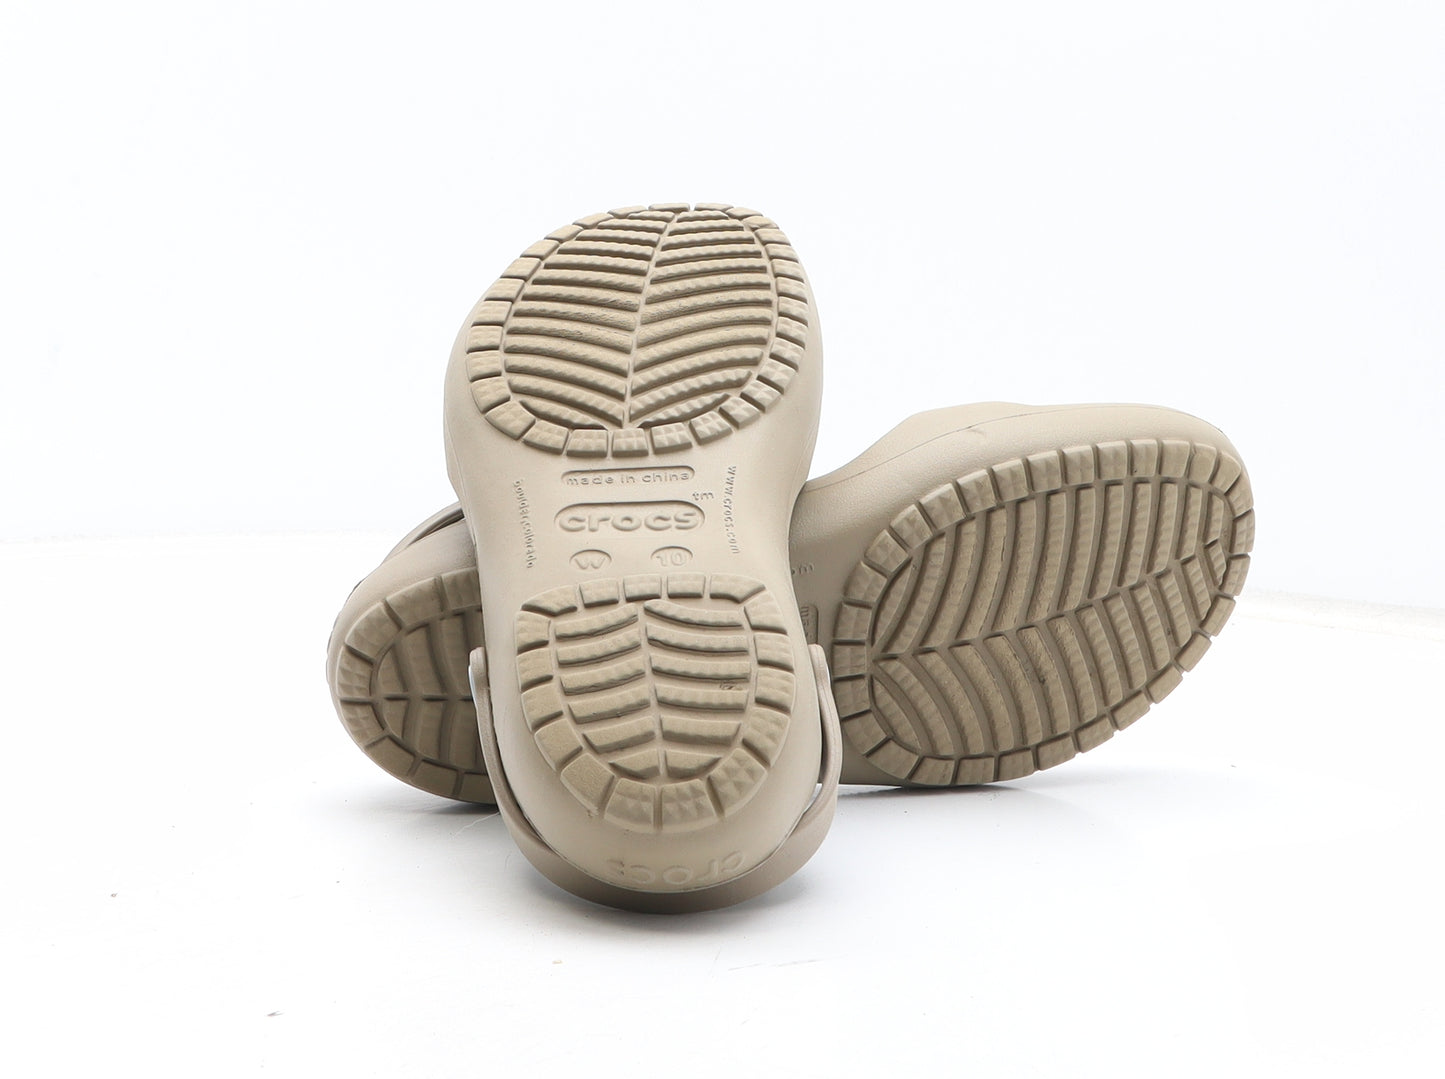 Crocs Womens Green Synthetic Slip On Sandal UK